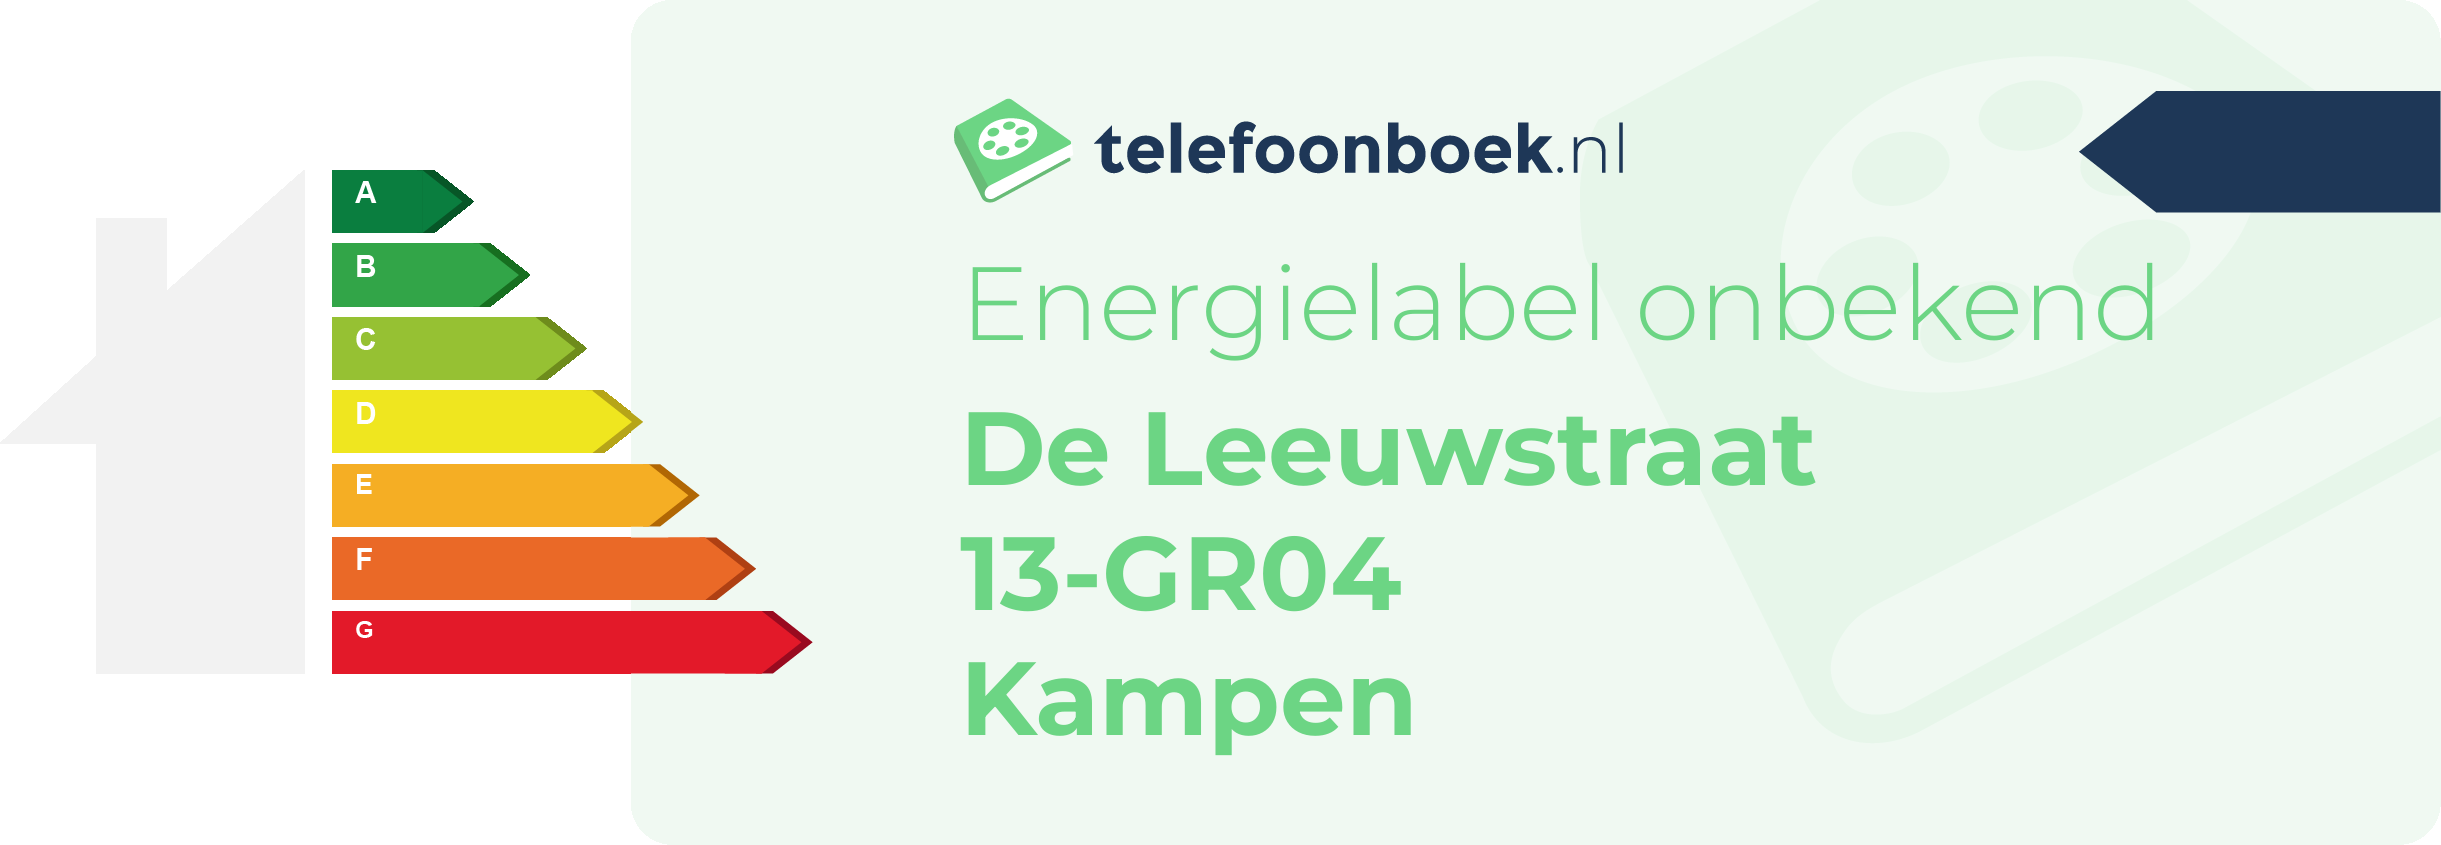 Energielabel De Leeuwstraat 13-GR04 Kampen